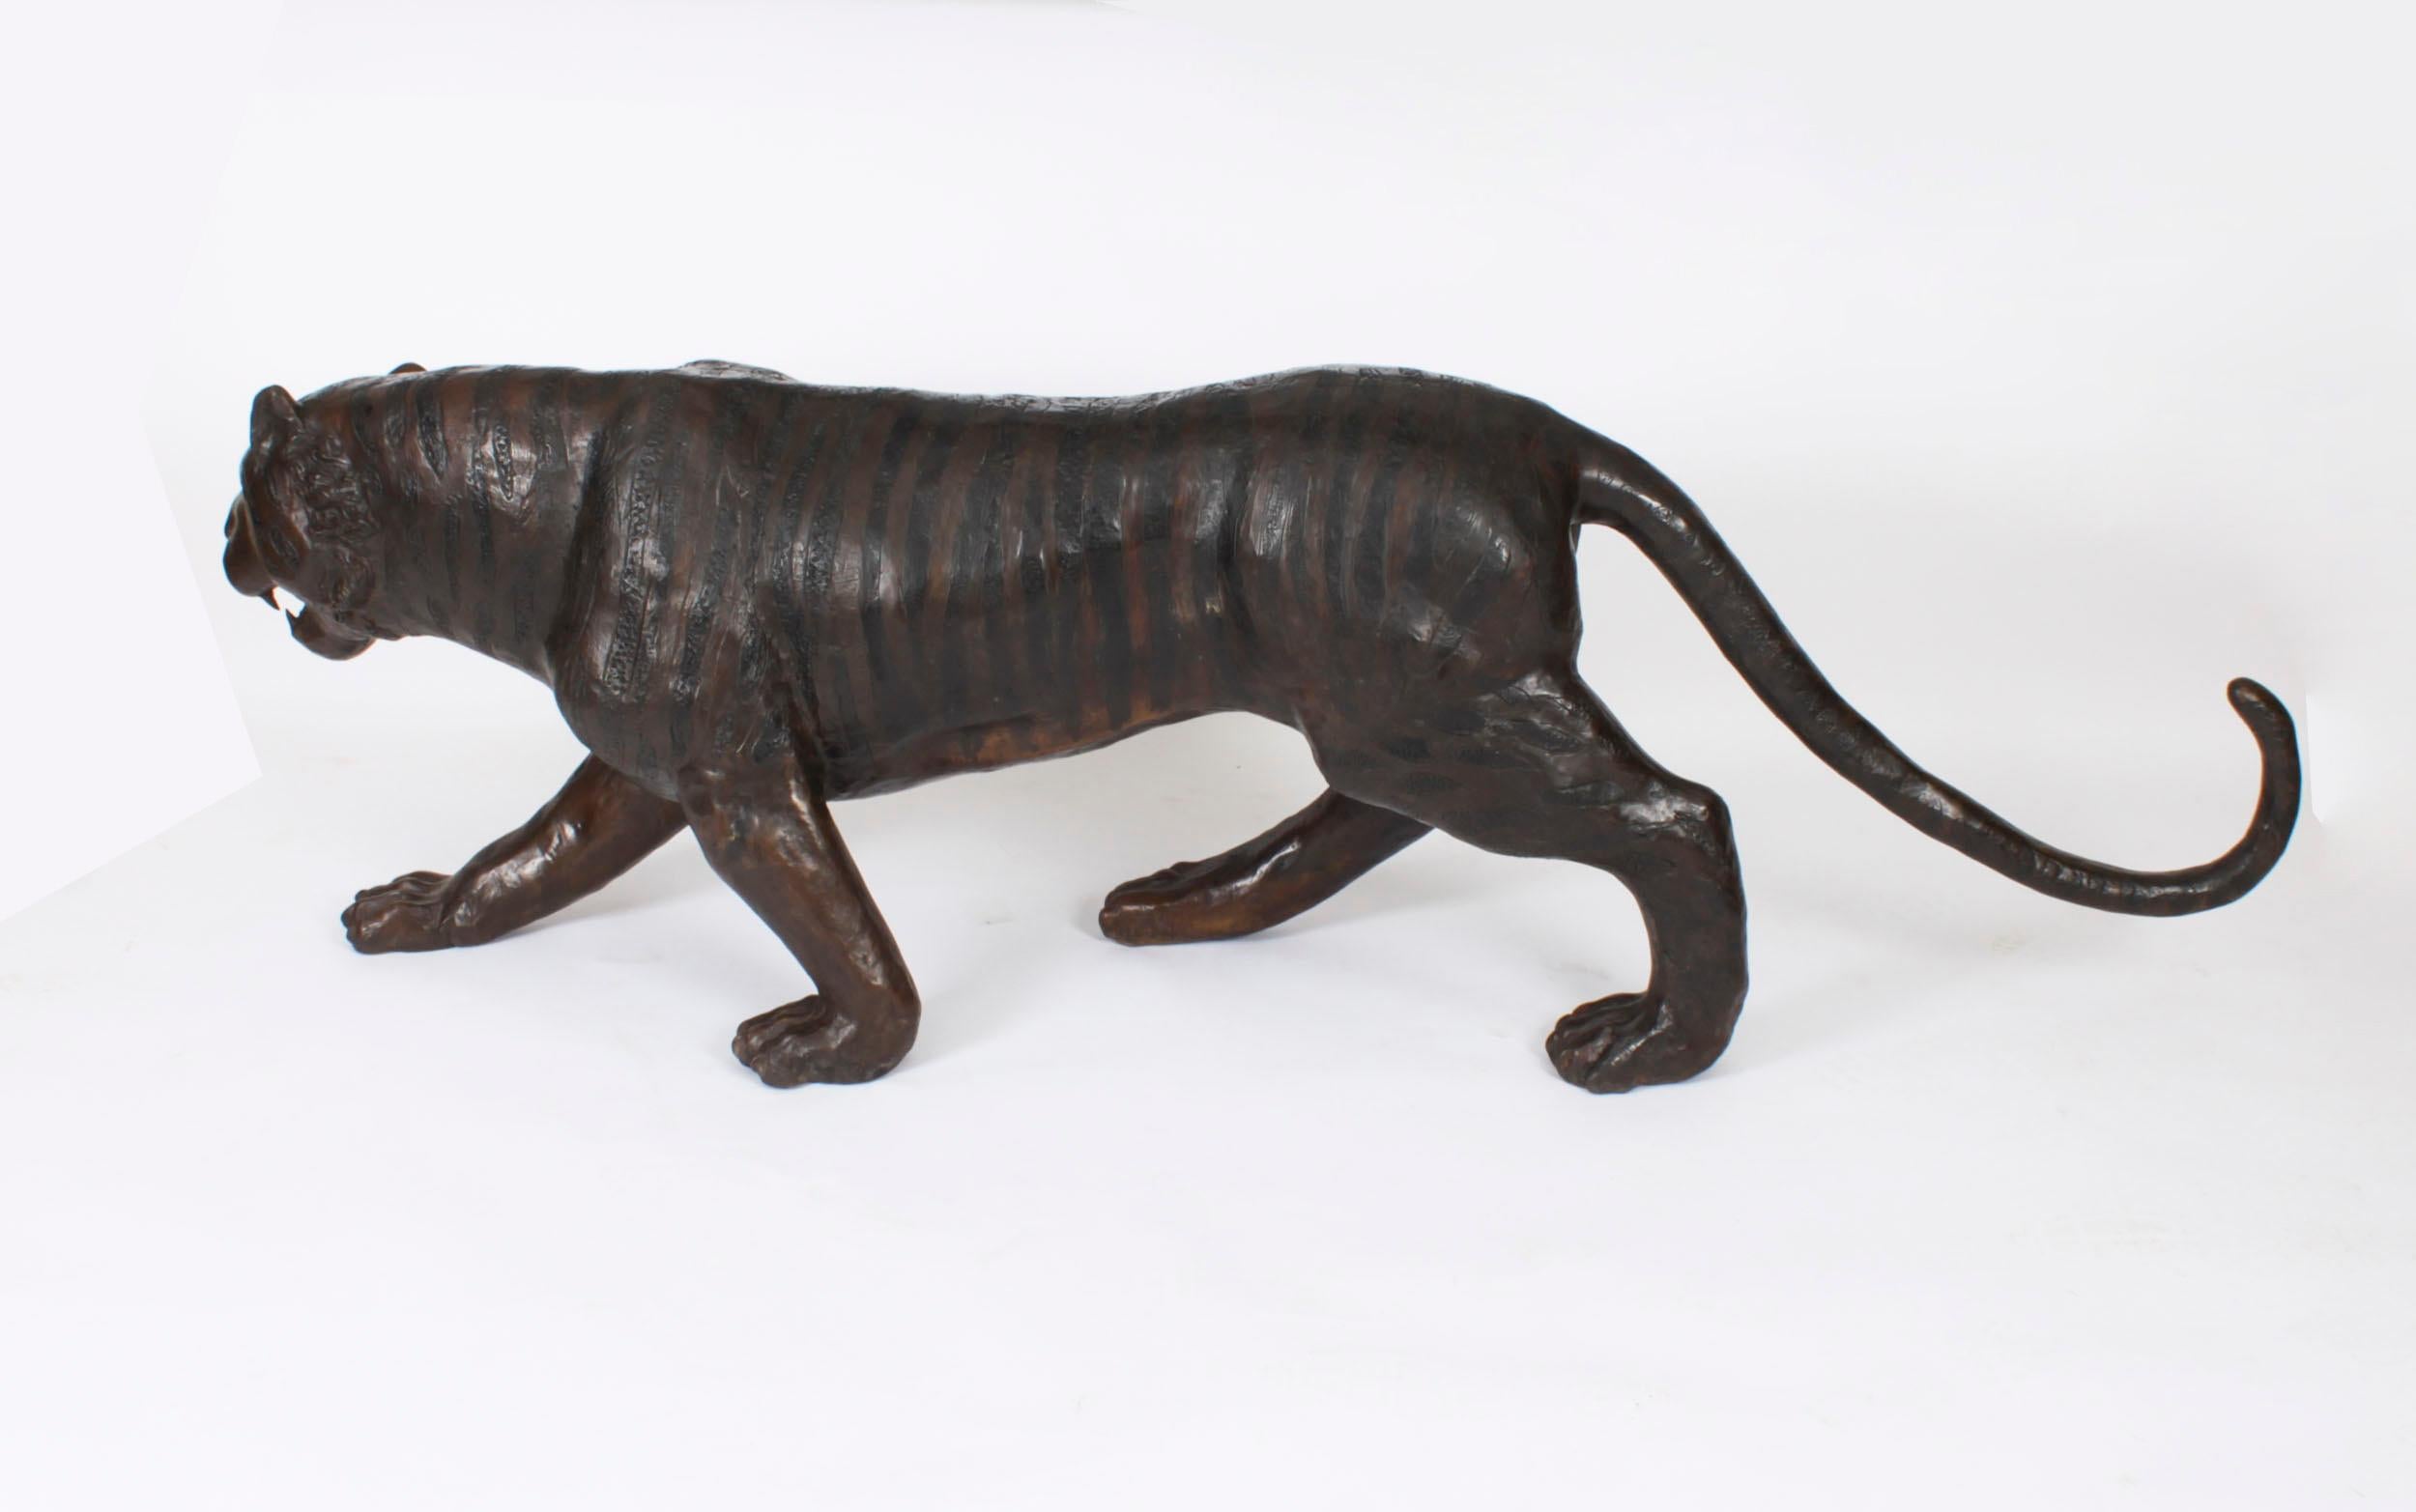 Dies ist eine wirklich beeindruckende lebensgroße Bronzestatue eines Tigers aus dem späten 20. 

Die Qualität der Bronze ist unübertroffen, und die Liebe zum Detail ist einfach fantastisch.

Die Skulptur zeigt einen Tiger auf der Pirsch, der seinen